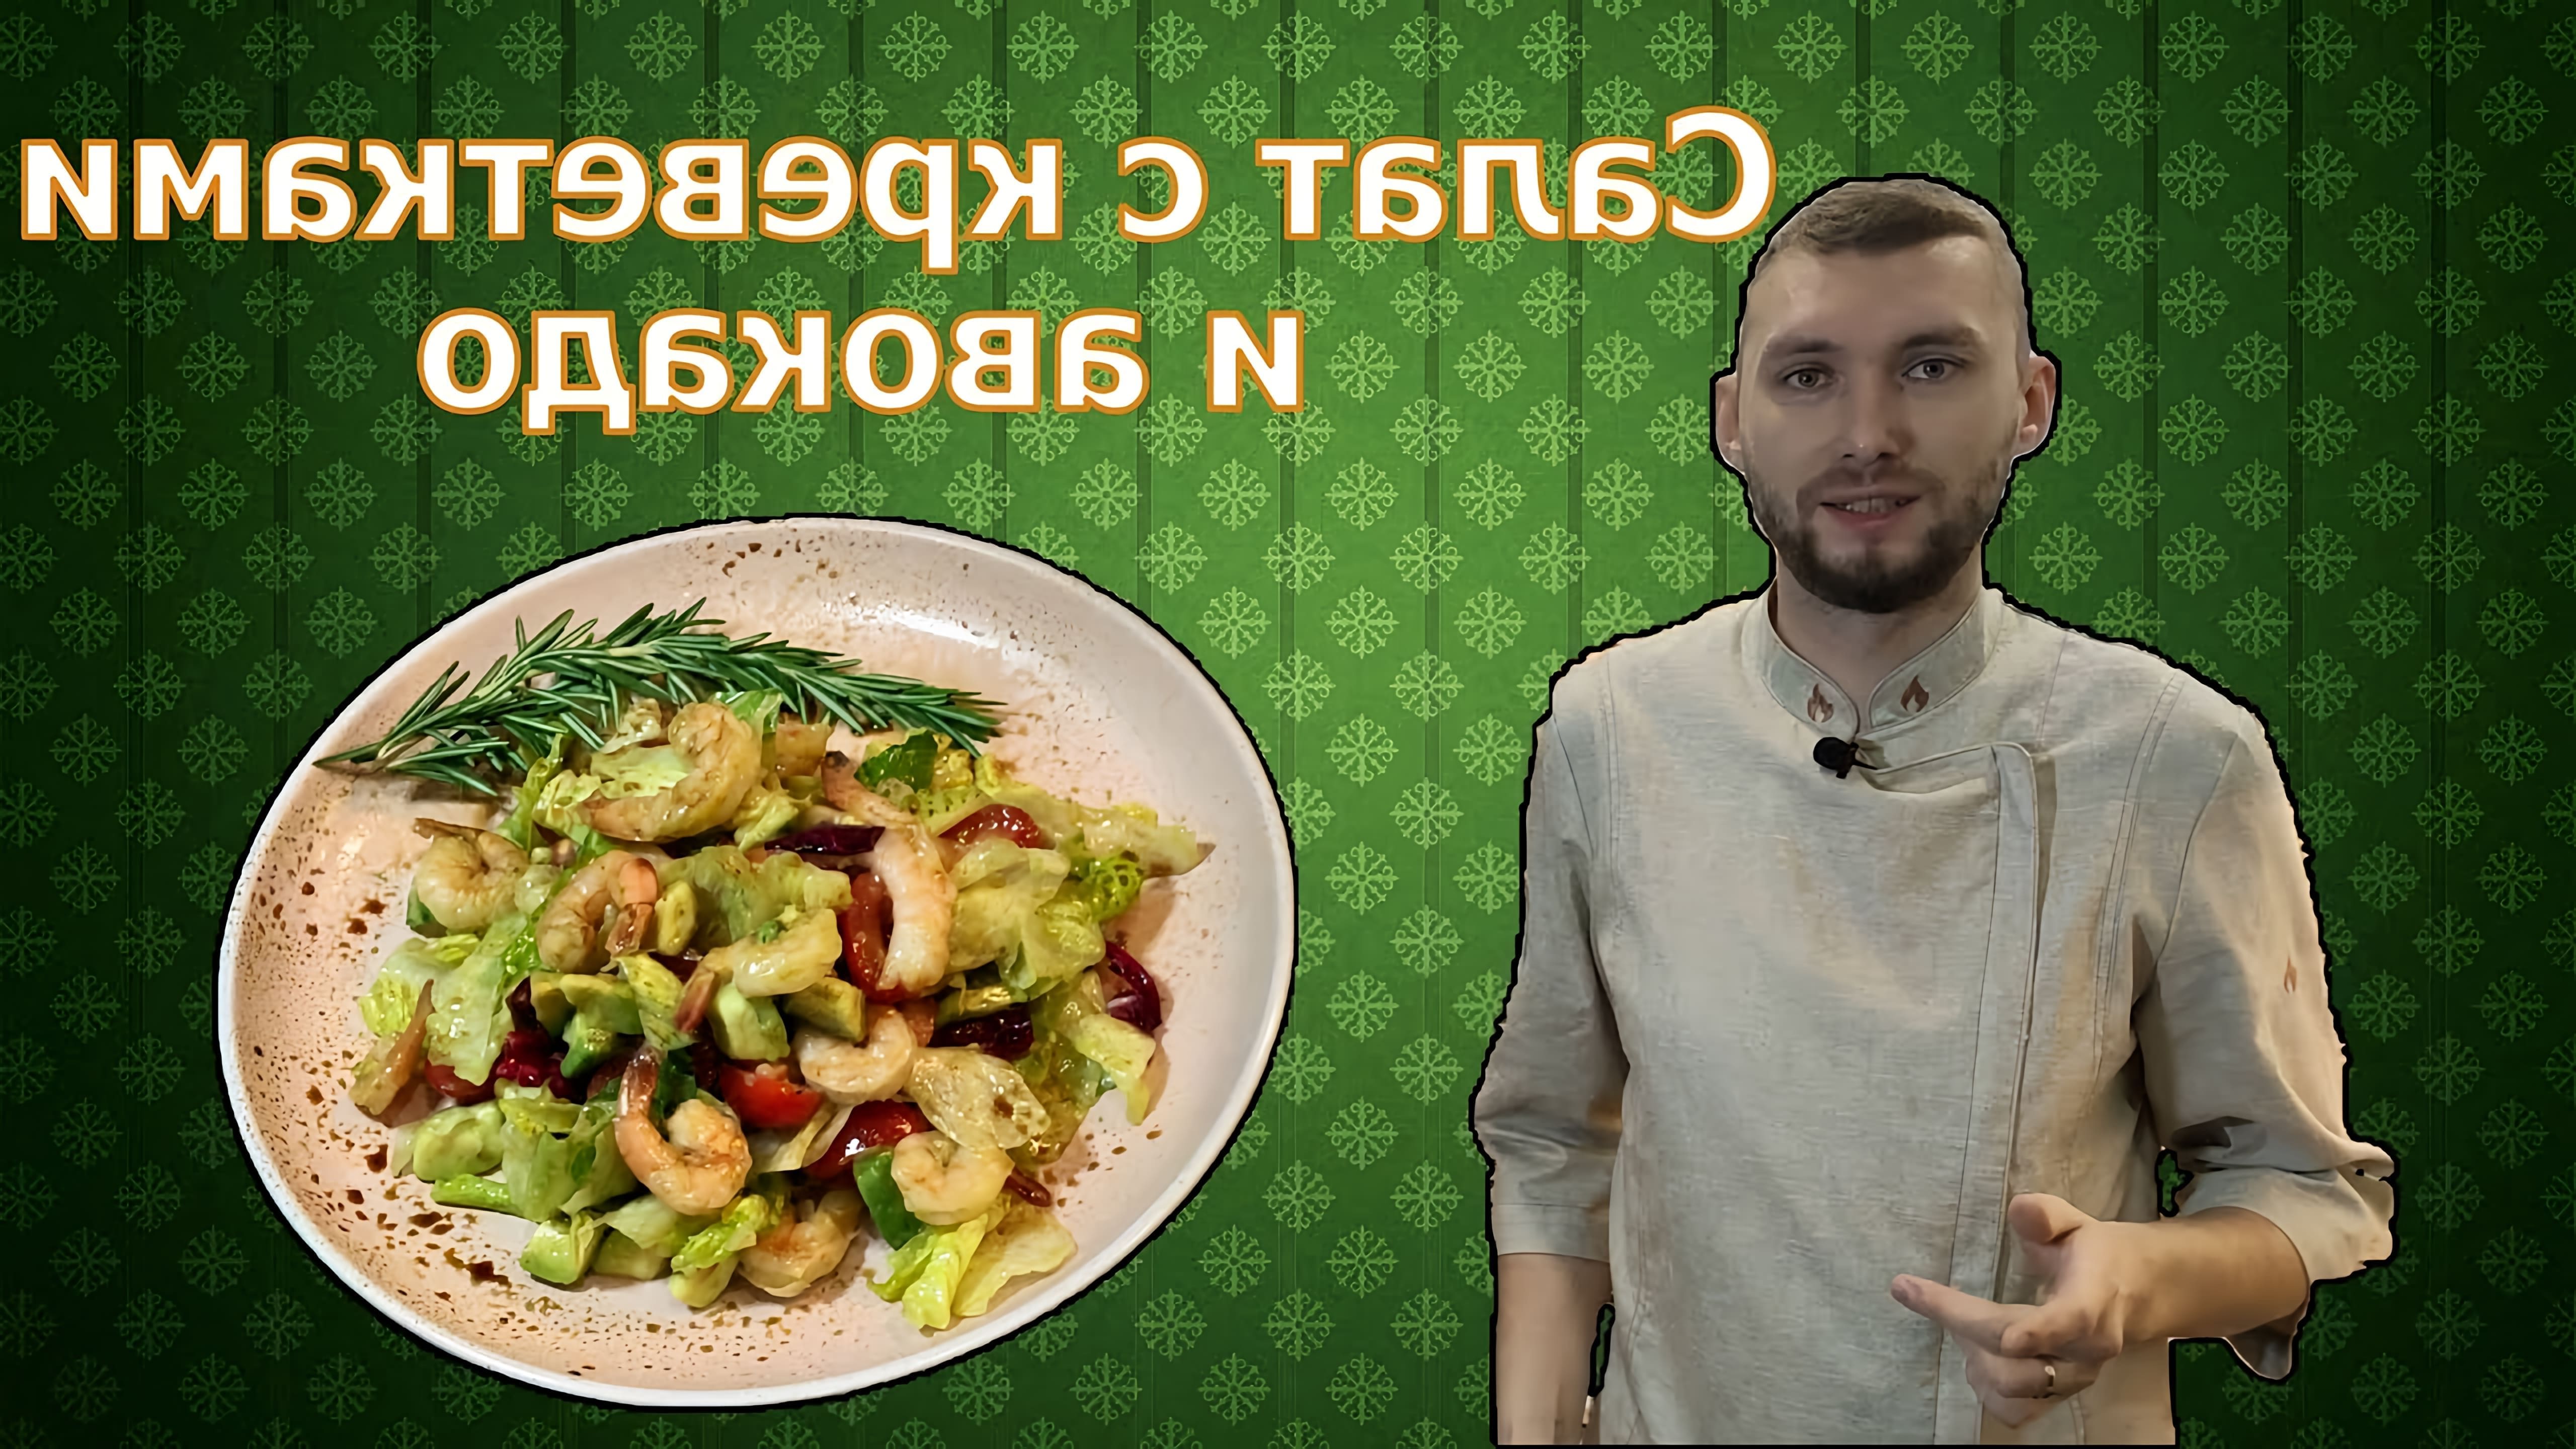 В этом видео демонстрируется процесс приготовления салата с креветками и авокадо под соусом с бальзамическим уксусом